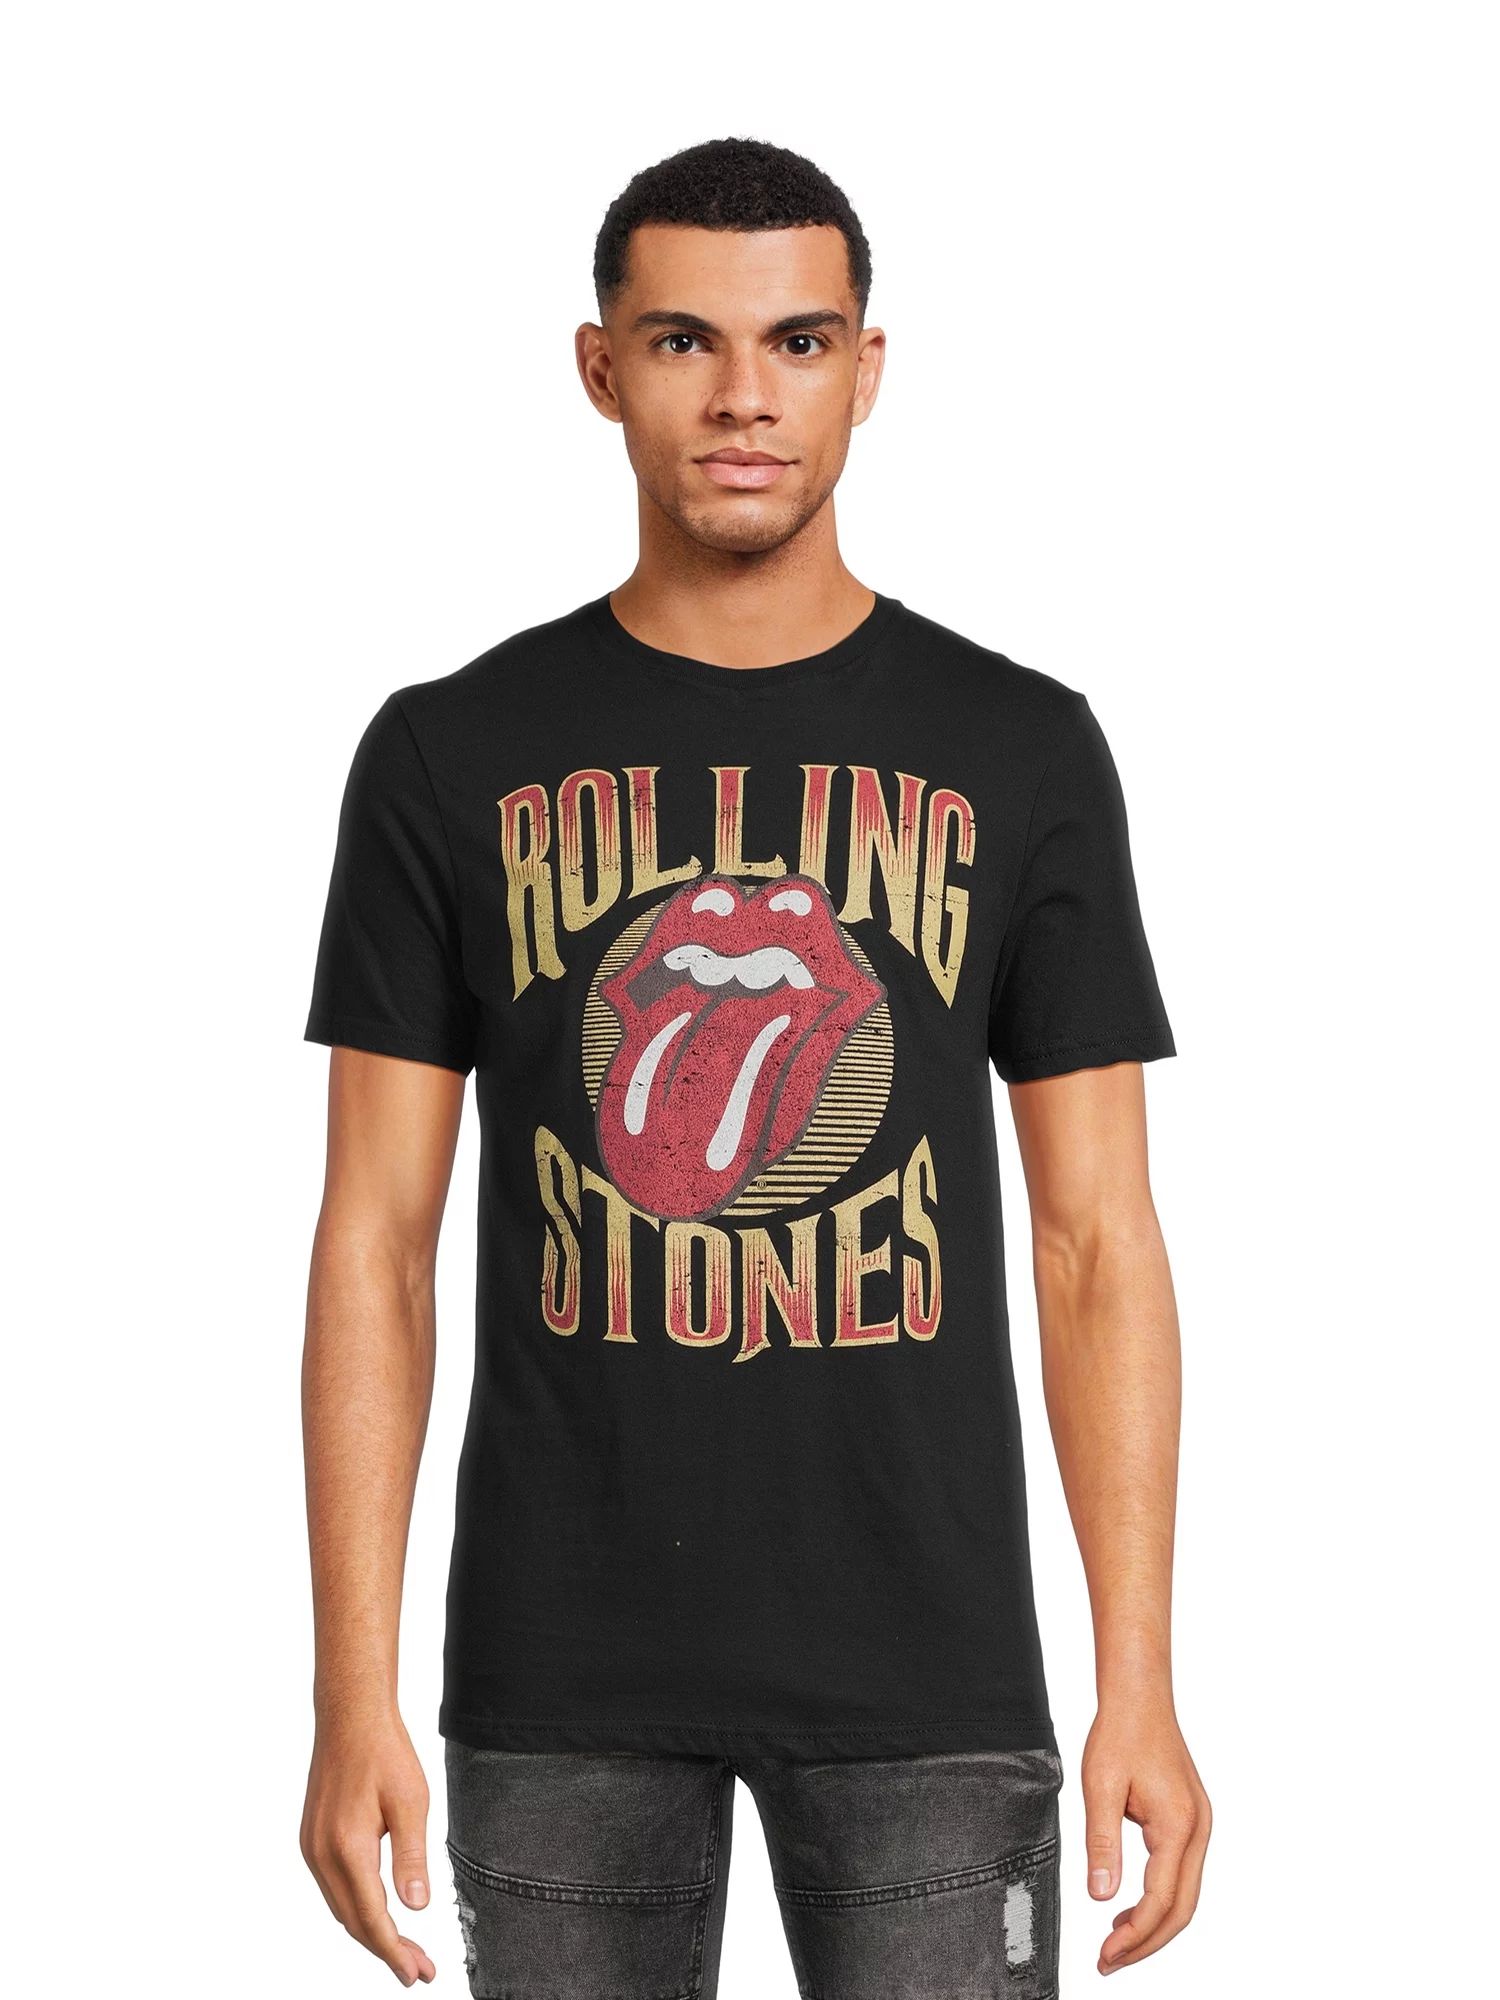 Rolling Stones Classic Men’s & Big Men’s Graphic Tee with Short Sleeves, Sizes S-3XL - Walmar... | Walmart (US)